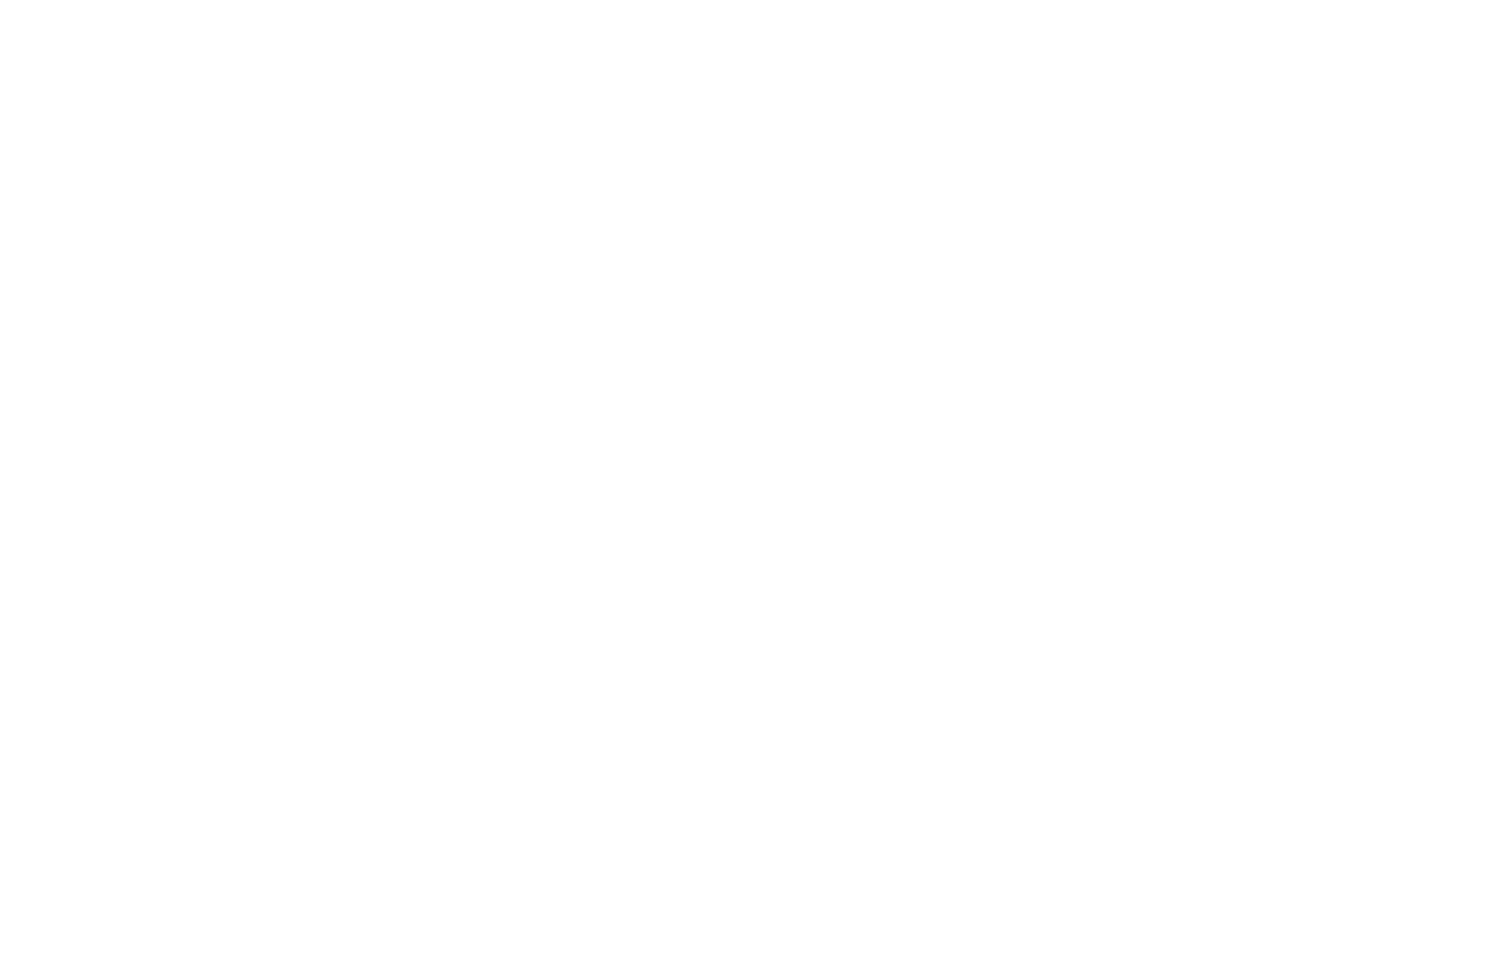 Jesse Oliver